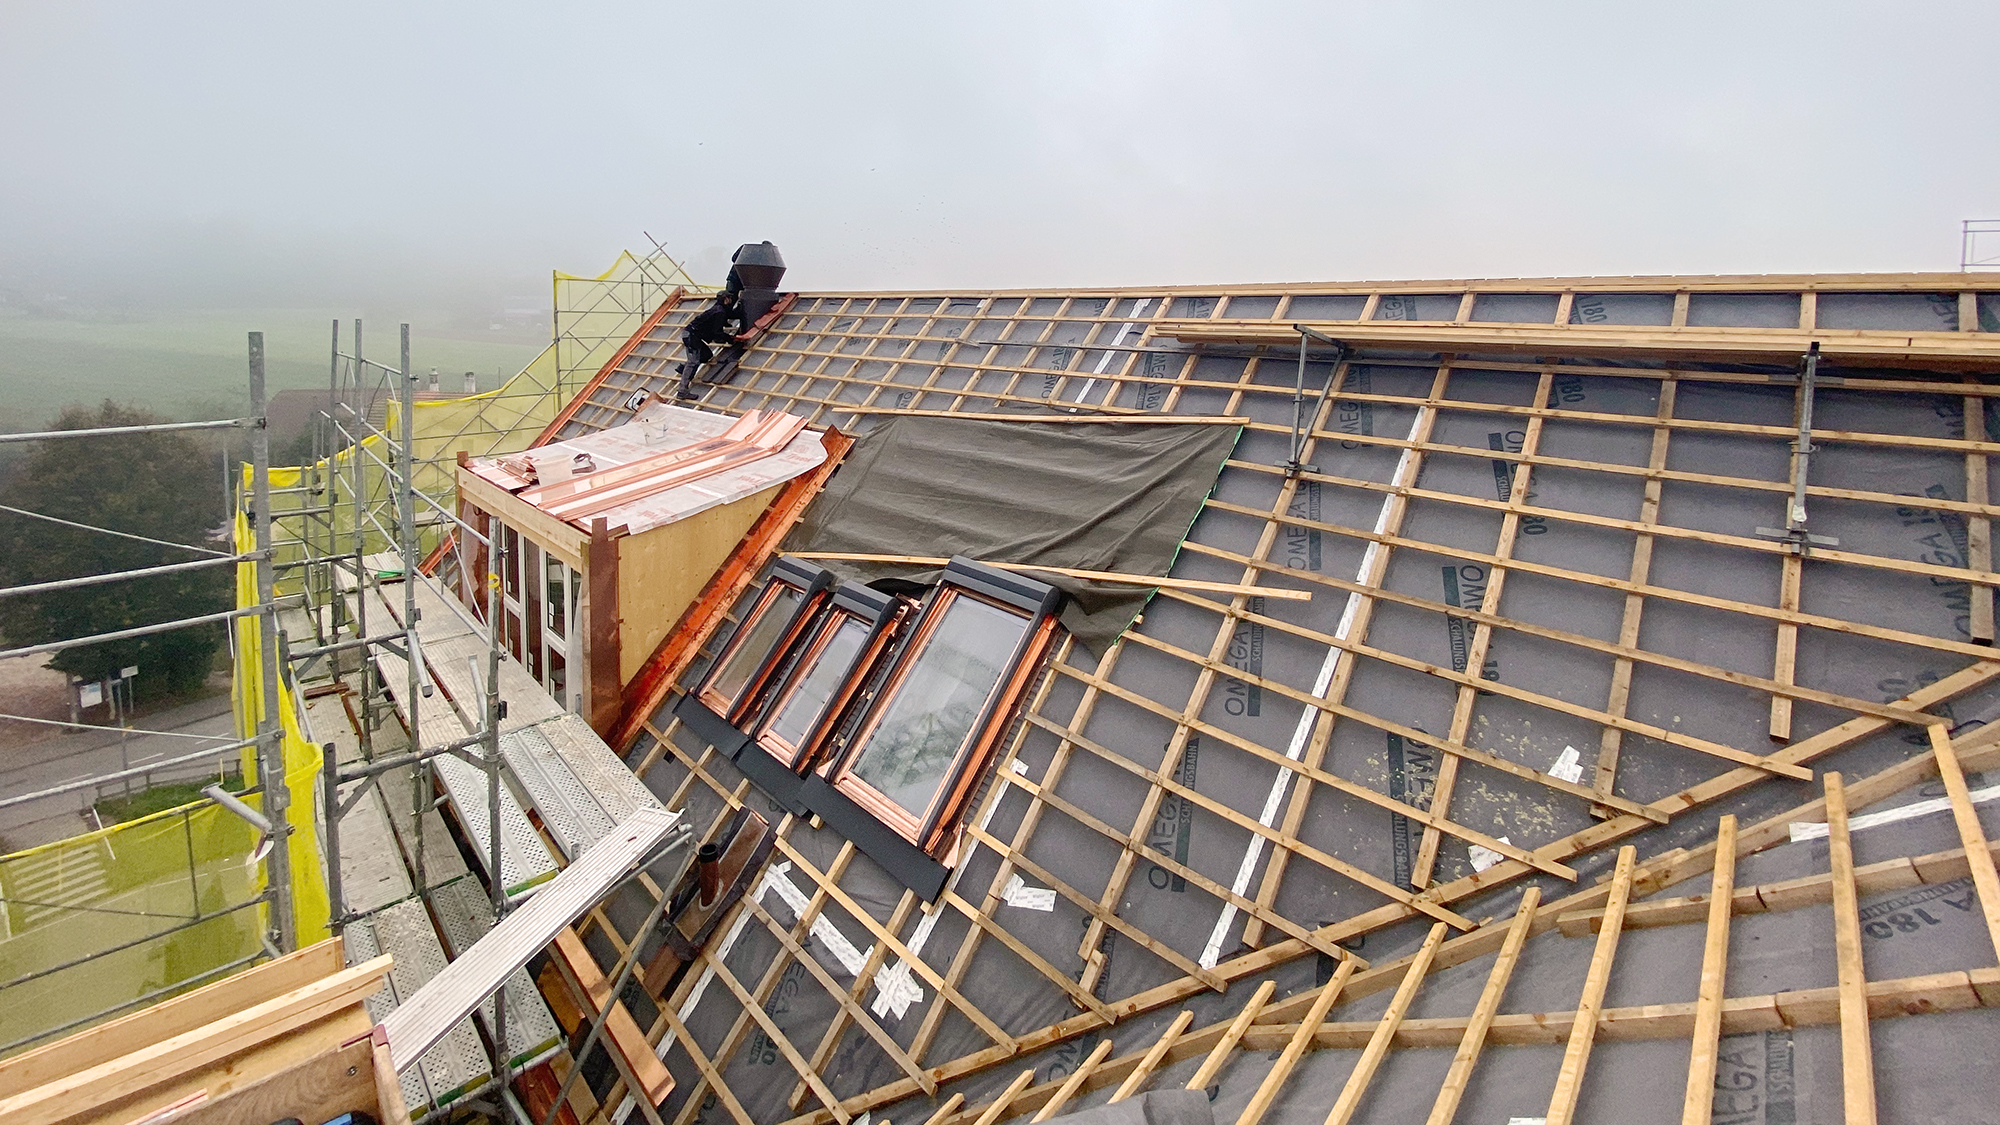 17.09.2020
Im Anschluss an die Montage der Dachfenster wird die Lattung für die Dachziegel vorbereitet.